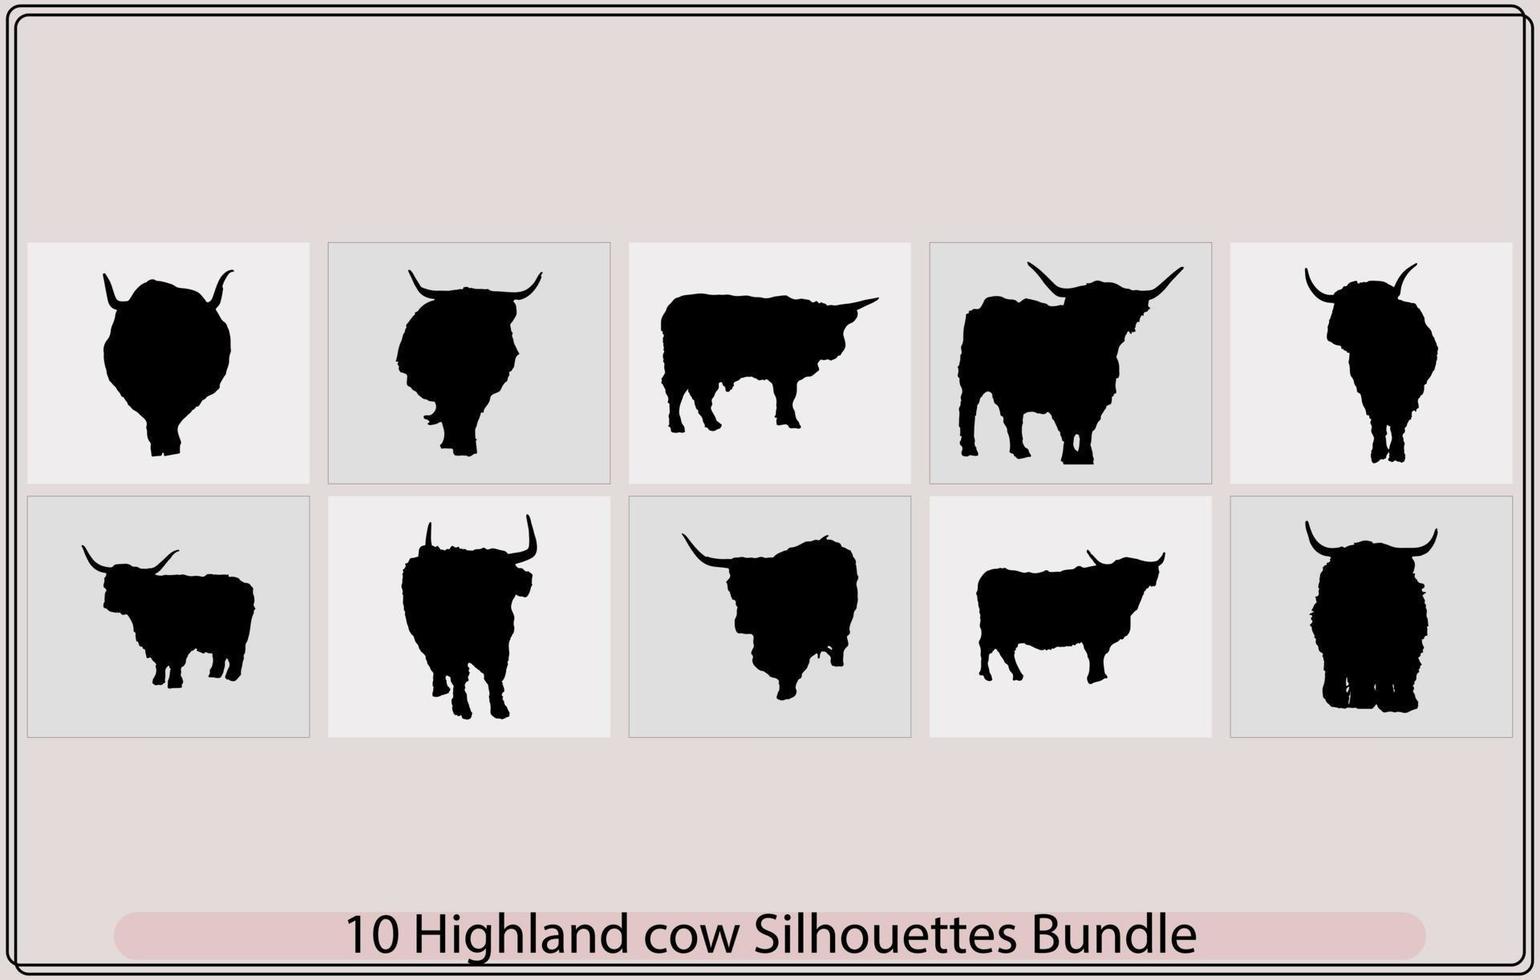 terras altas vaca silhueta, vetor ilustrado retrato do terras altas gado, iaque cabeça silhueta escocês terras altas gado